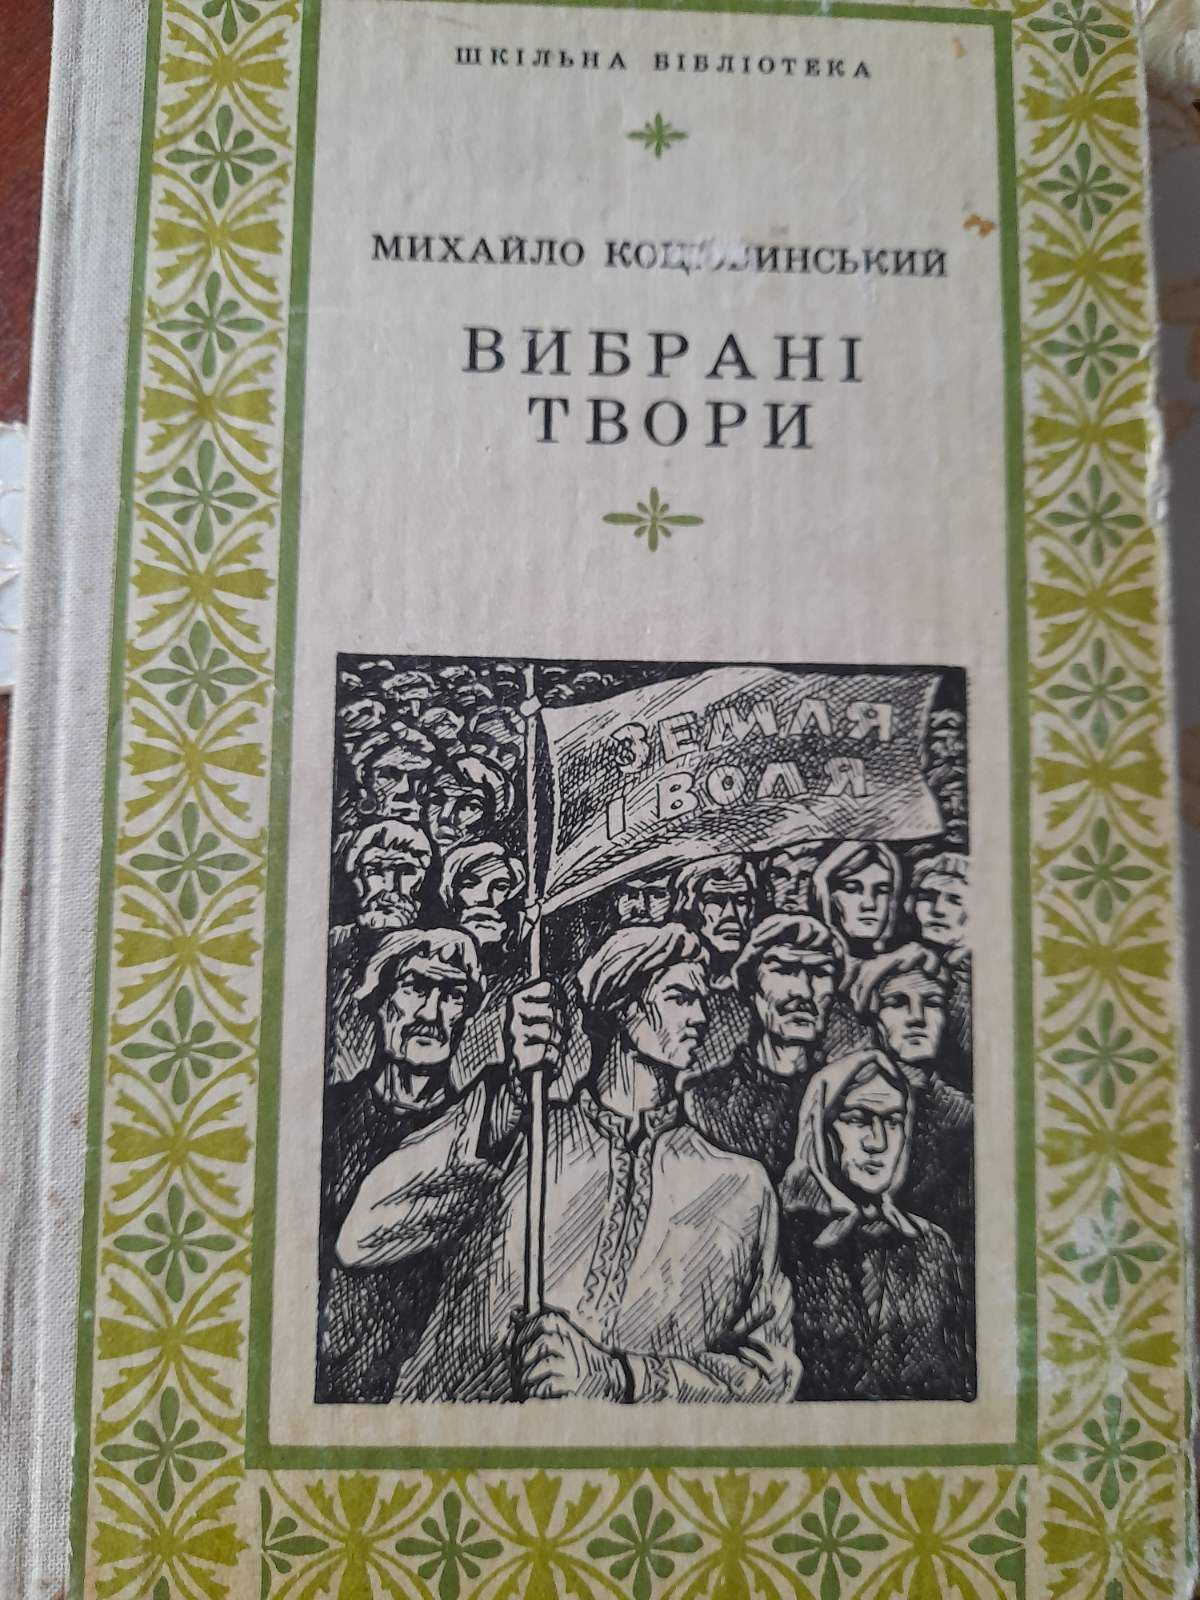 Михайло Коцюбинський. Вибрані твори. Видавництво 1976 року.